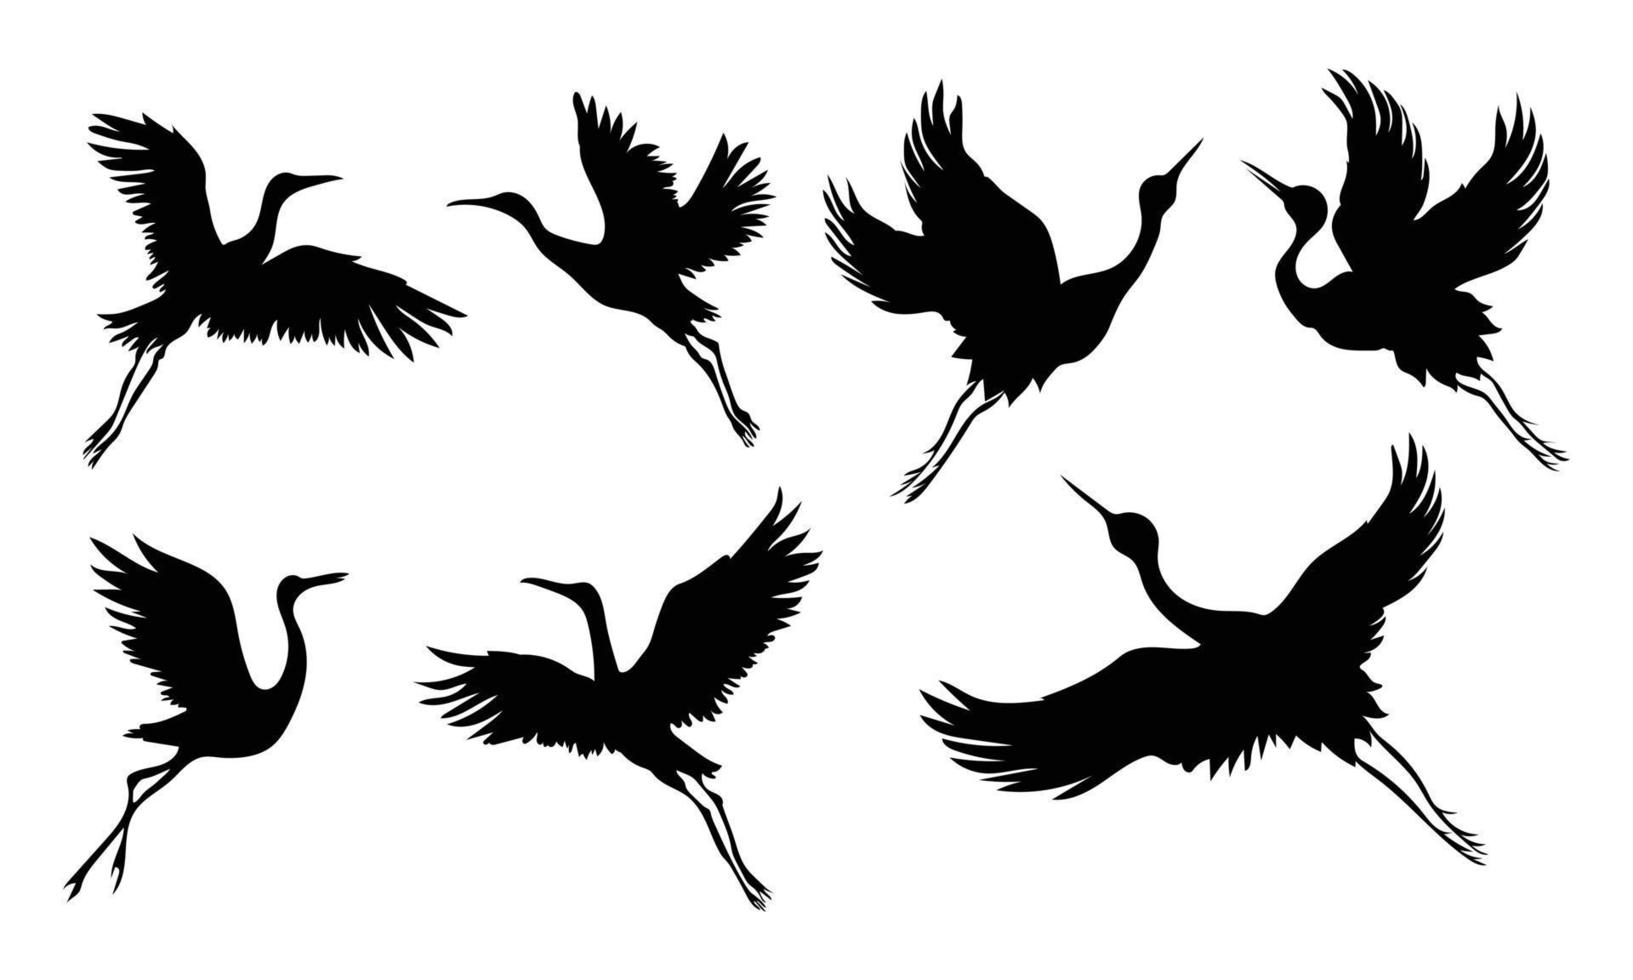 Sammlung von Kranich-Vogel-Silhouetten isoliert auf weißem Hintergrund vektor